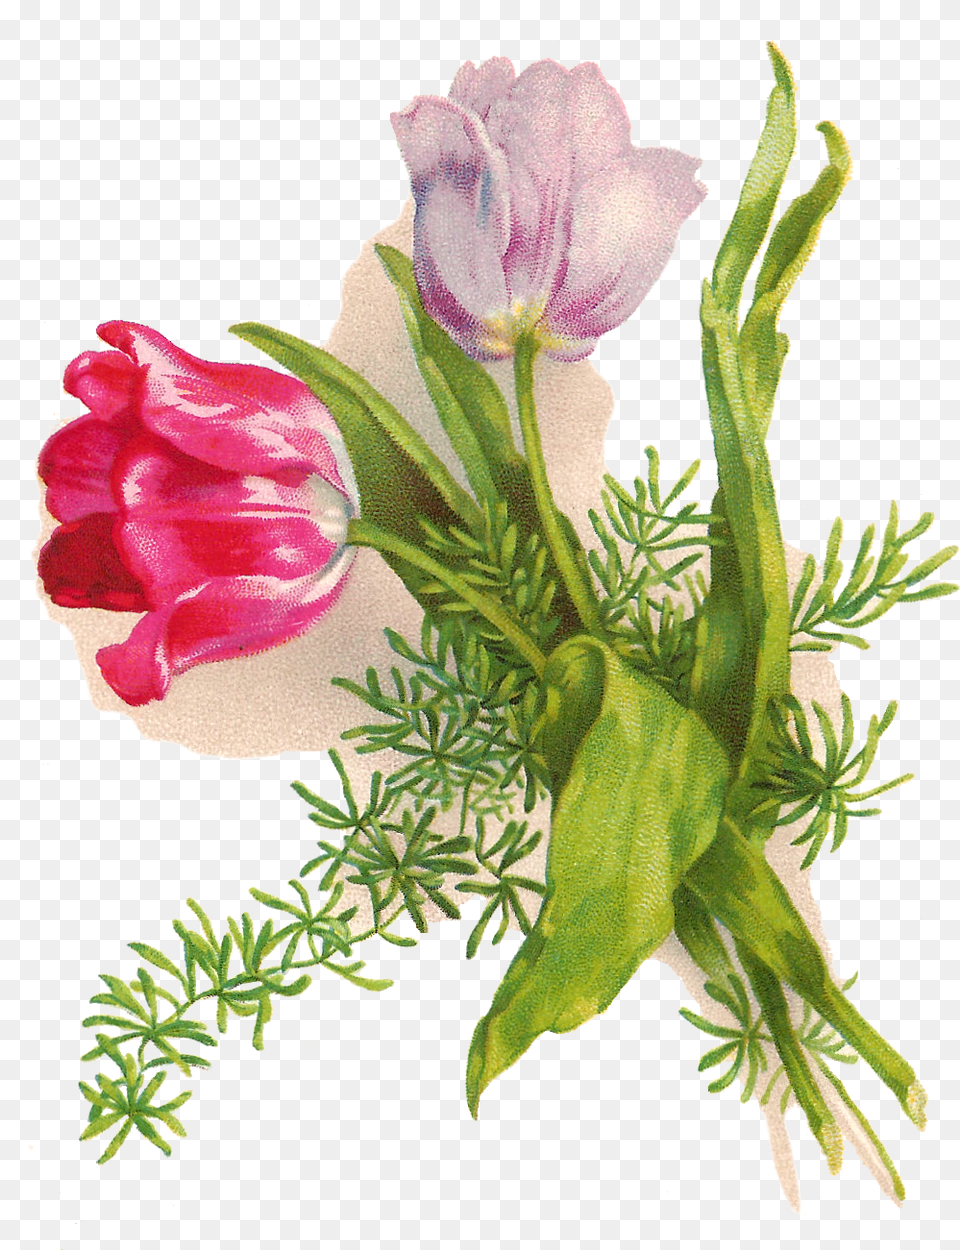 Easter Bunny Wedding Invitation Greeting Amp Note Cards, Art, Floral Design, Flower, Flower Arrangement Png Image